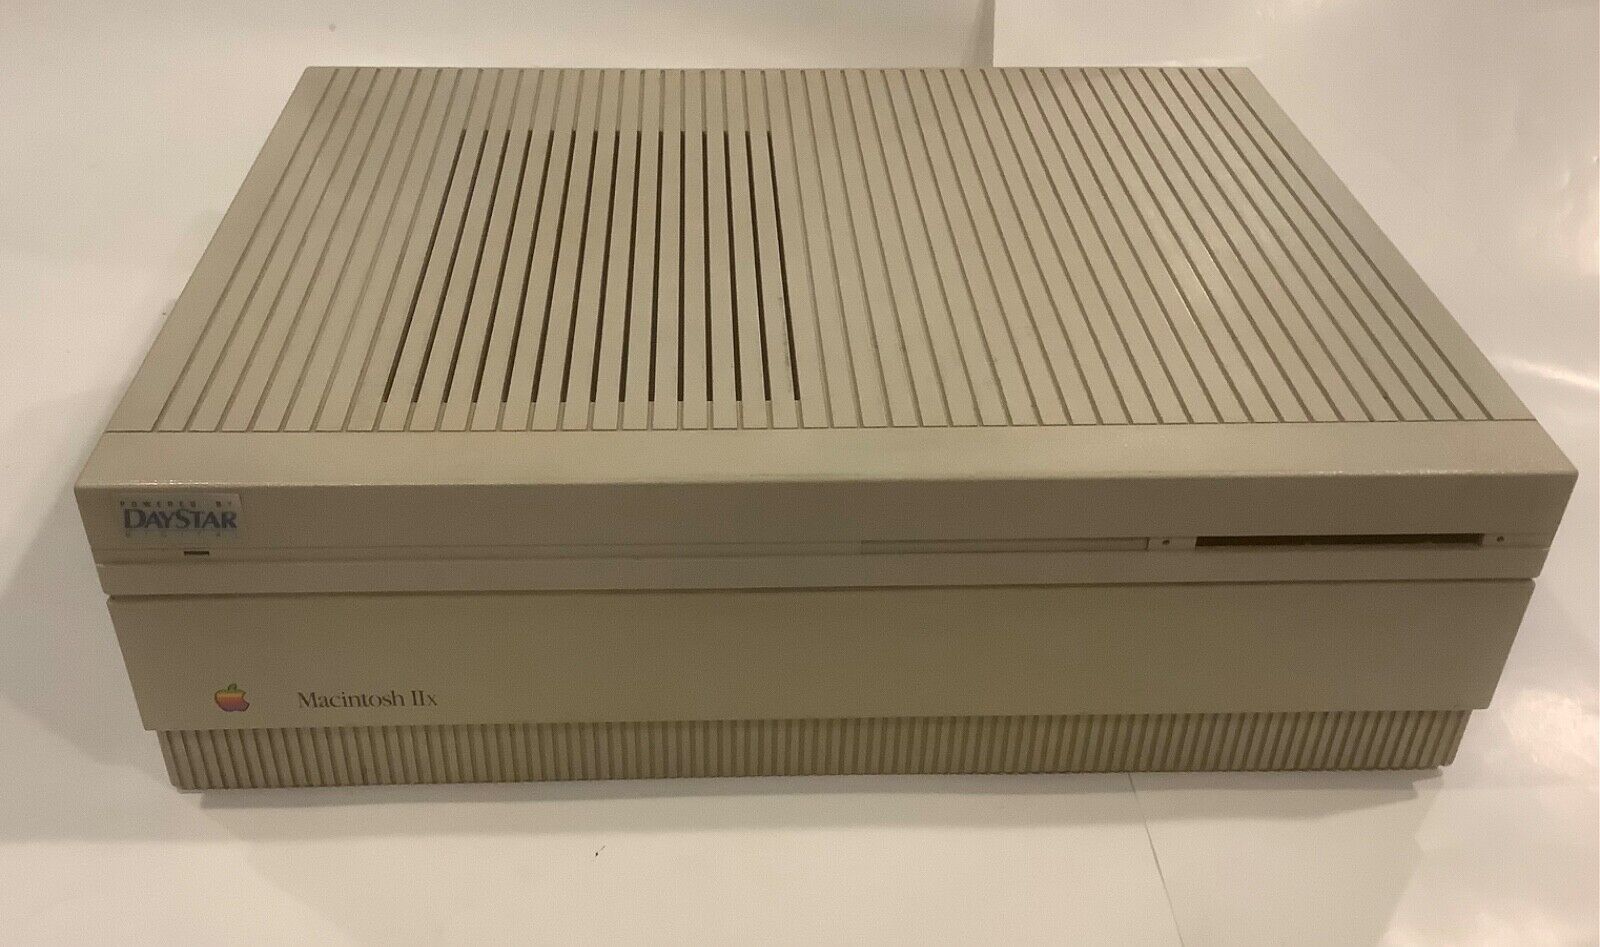 Apple Macintosh IIx M5840 Desktop Computer - Vintage 1988-1990 Mac